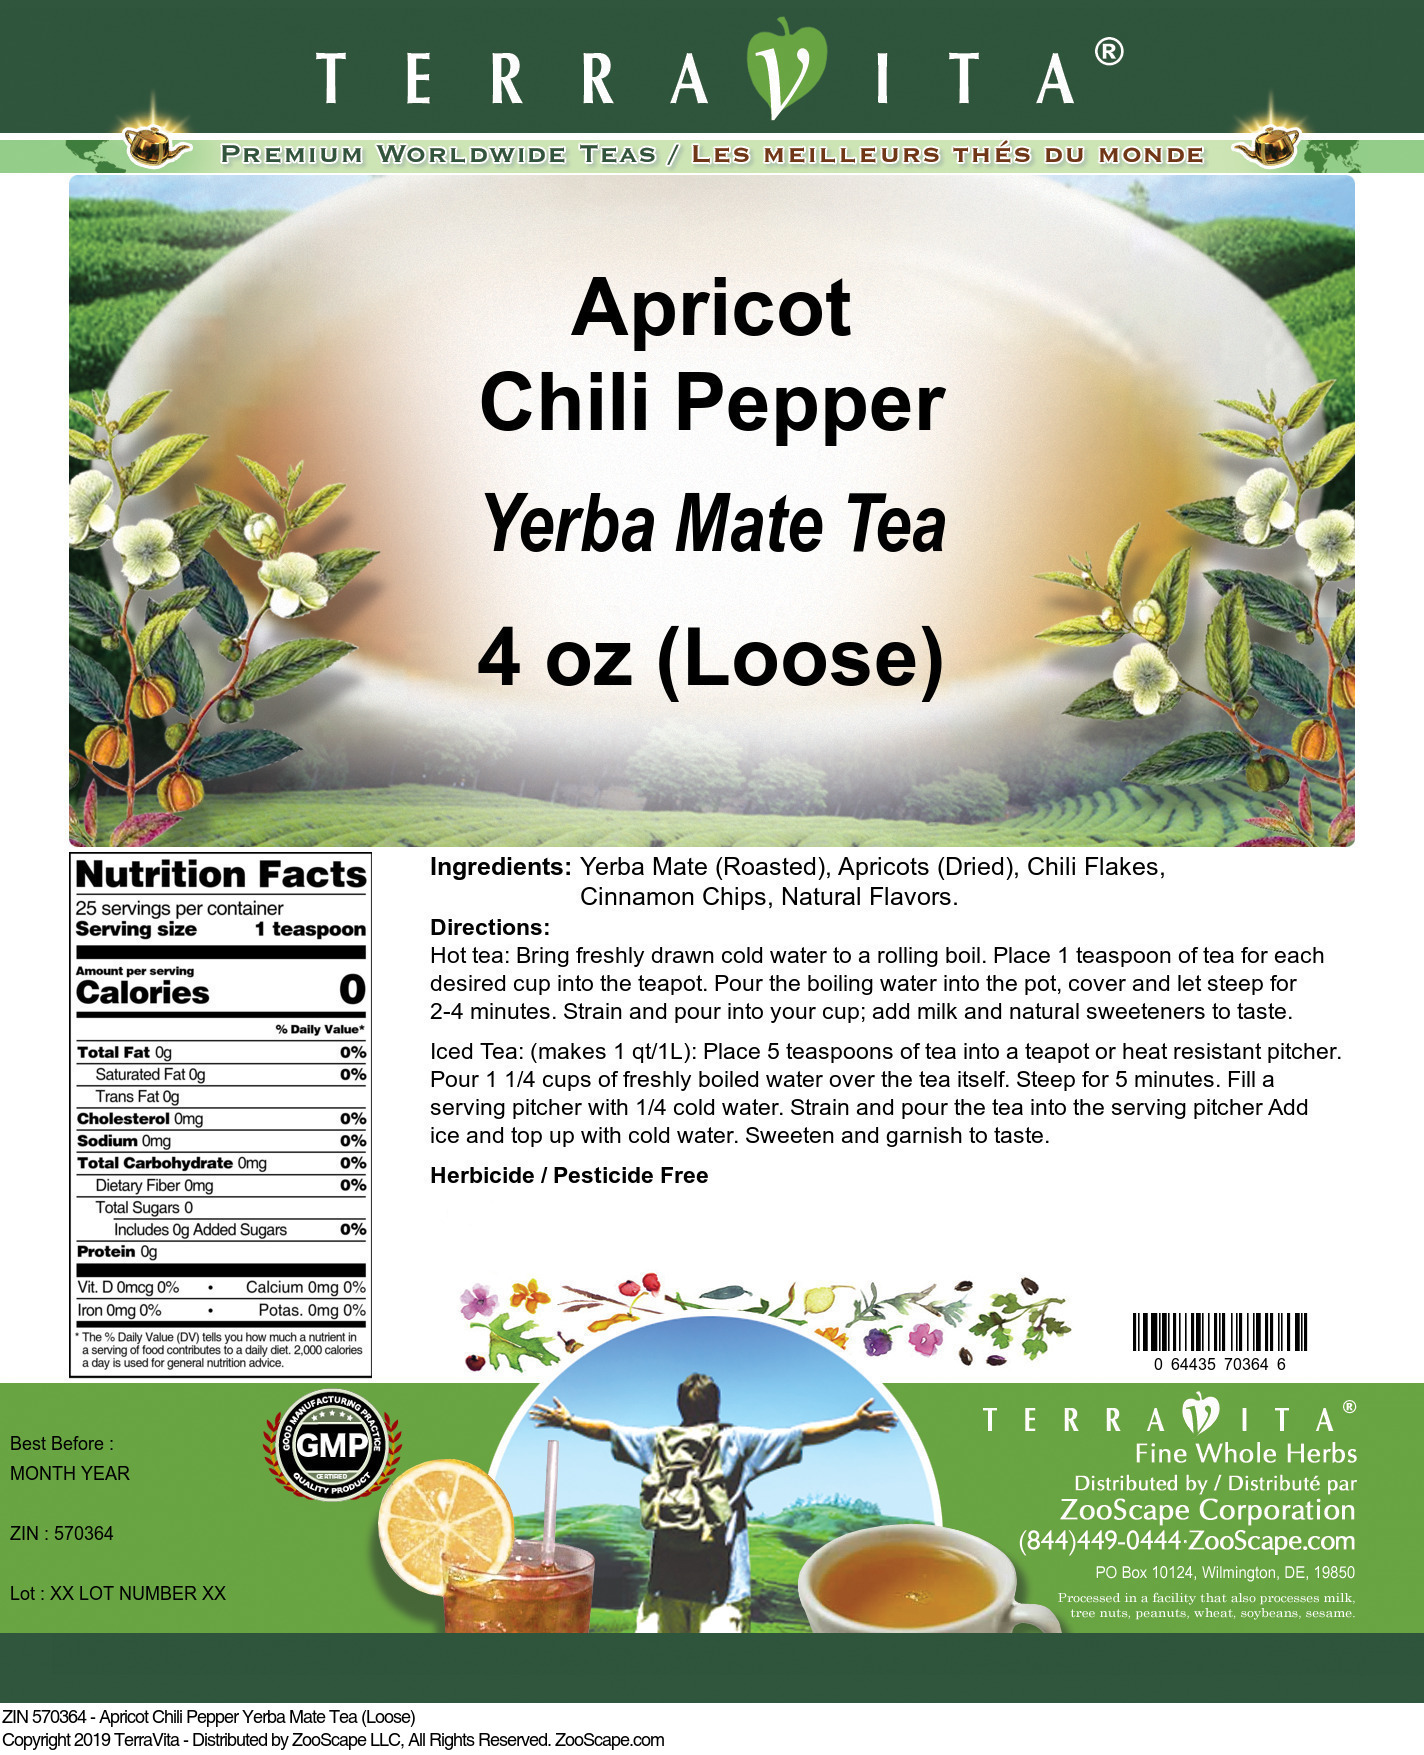 Apricot Chili Pepper Yerba Mate Tea (Loose) - Label